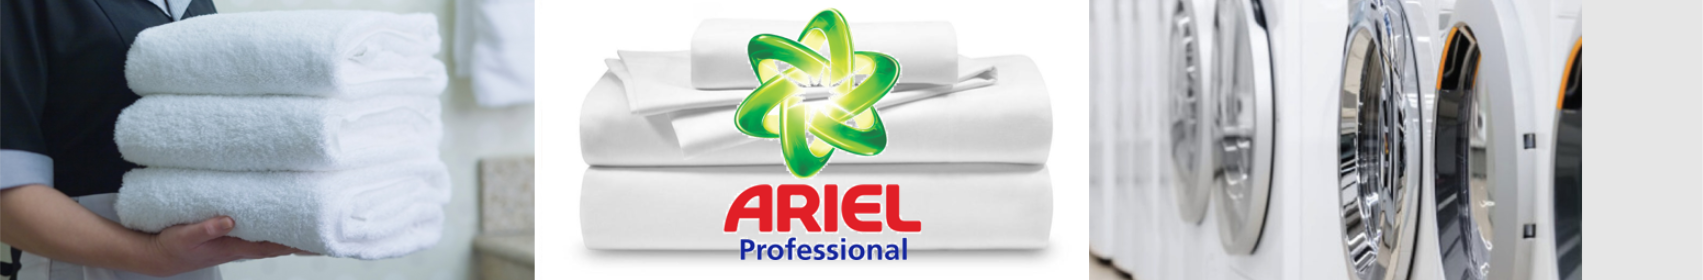 ariel-banner